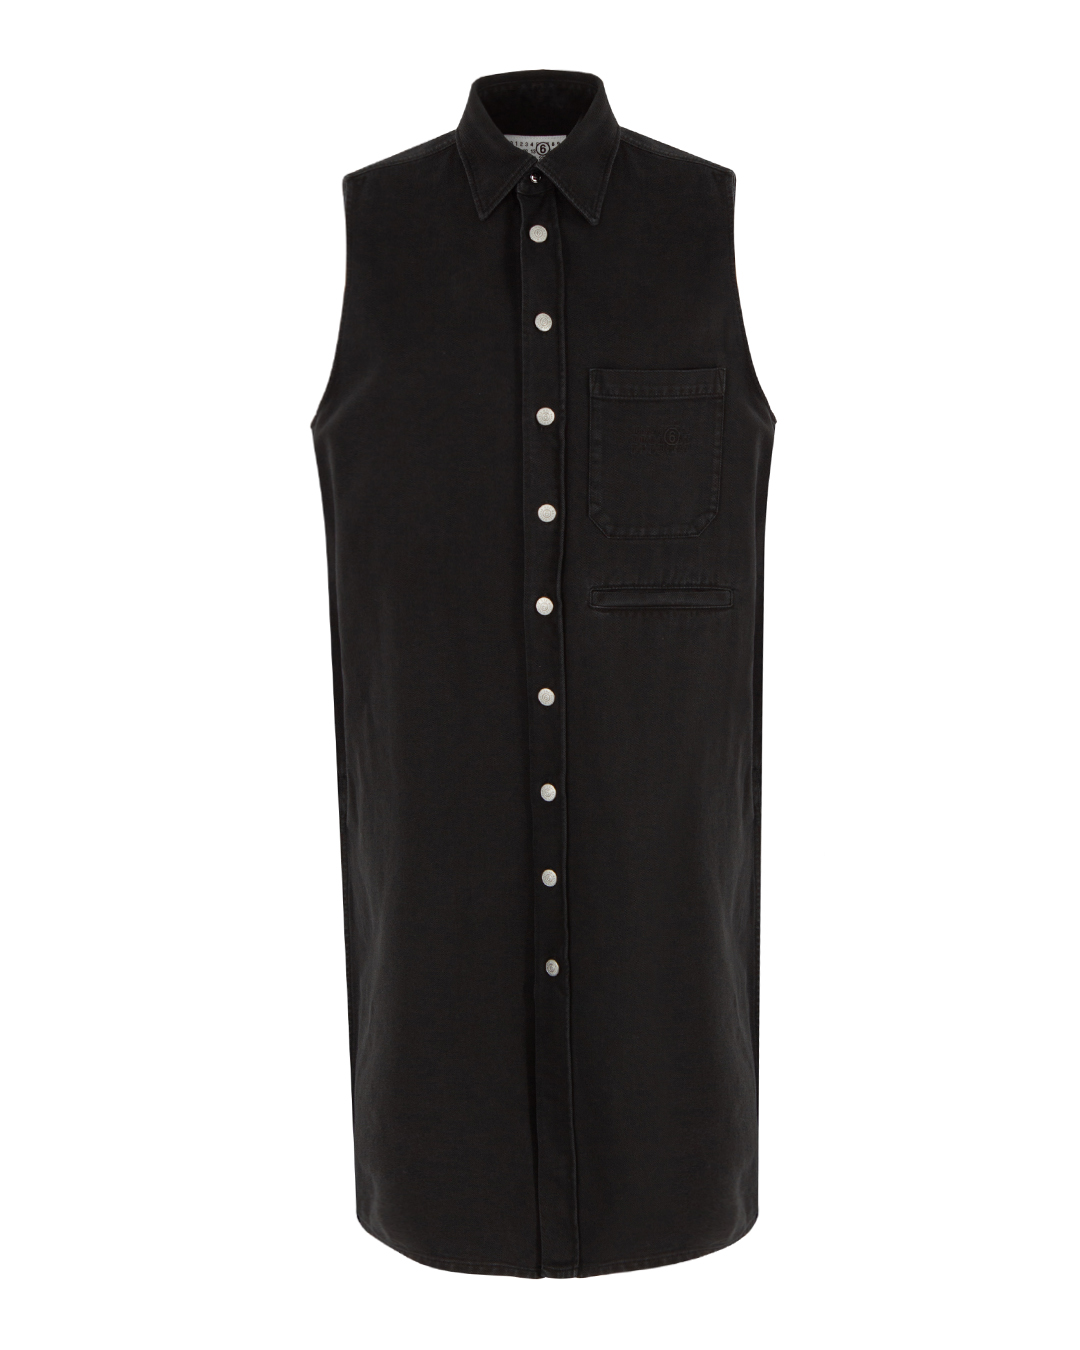 платье MM6 Maison Margiela S62DG0016 черный 40, размер 40 - фото 1